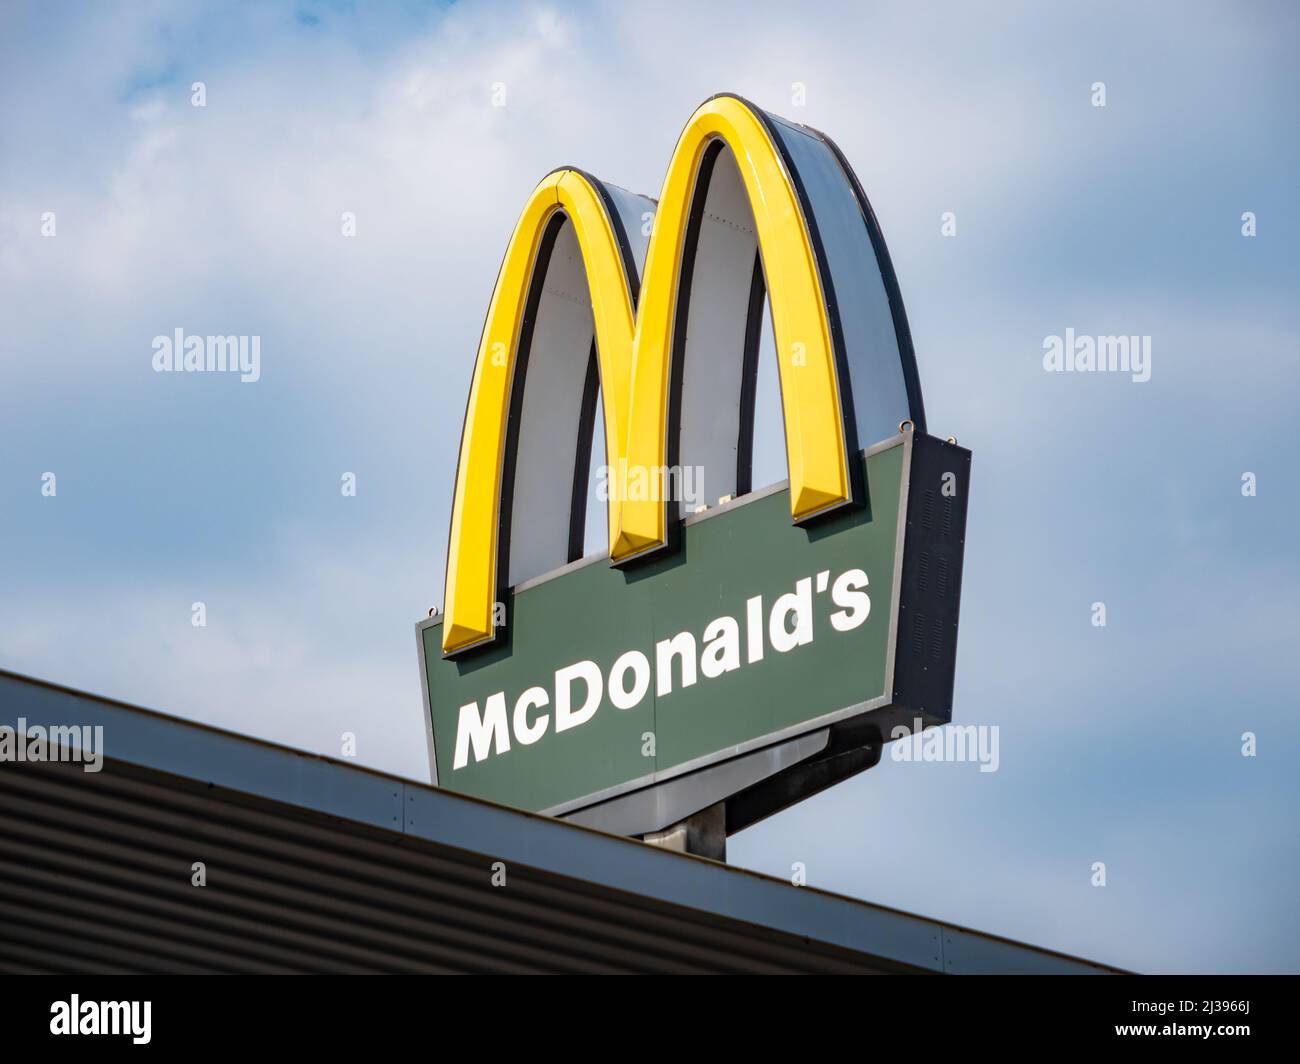 McDonald's-Logo auf einem Restaurant. Melden Sie sich an, um für das Fast-Food-Unternehmen zu werben. Amerikanisches Franchise-Unternehmen in einer deutschen Stadt. Stockfoto